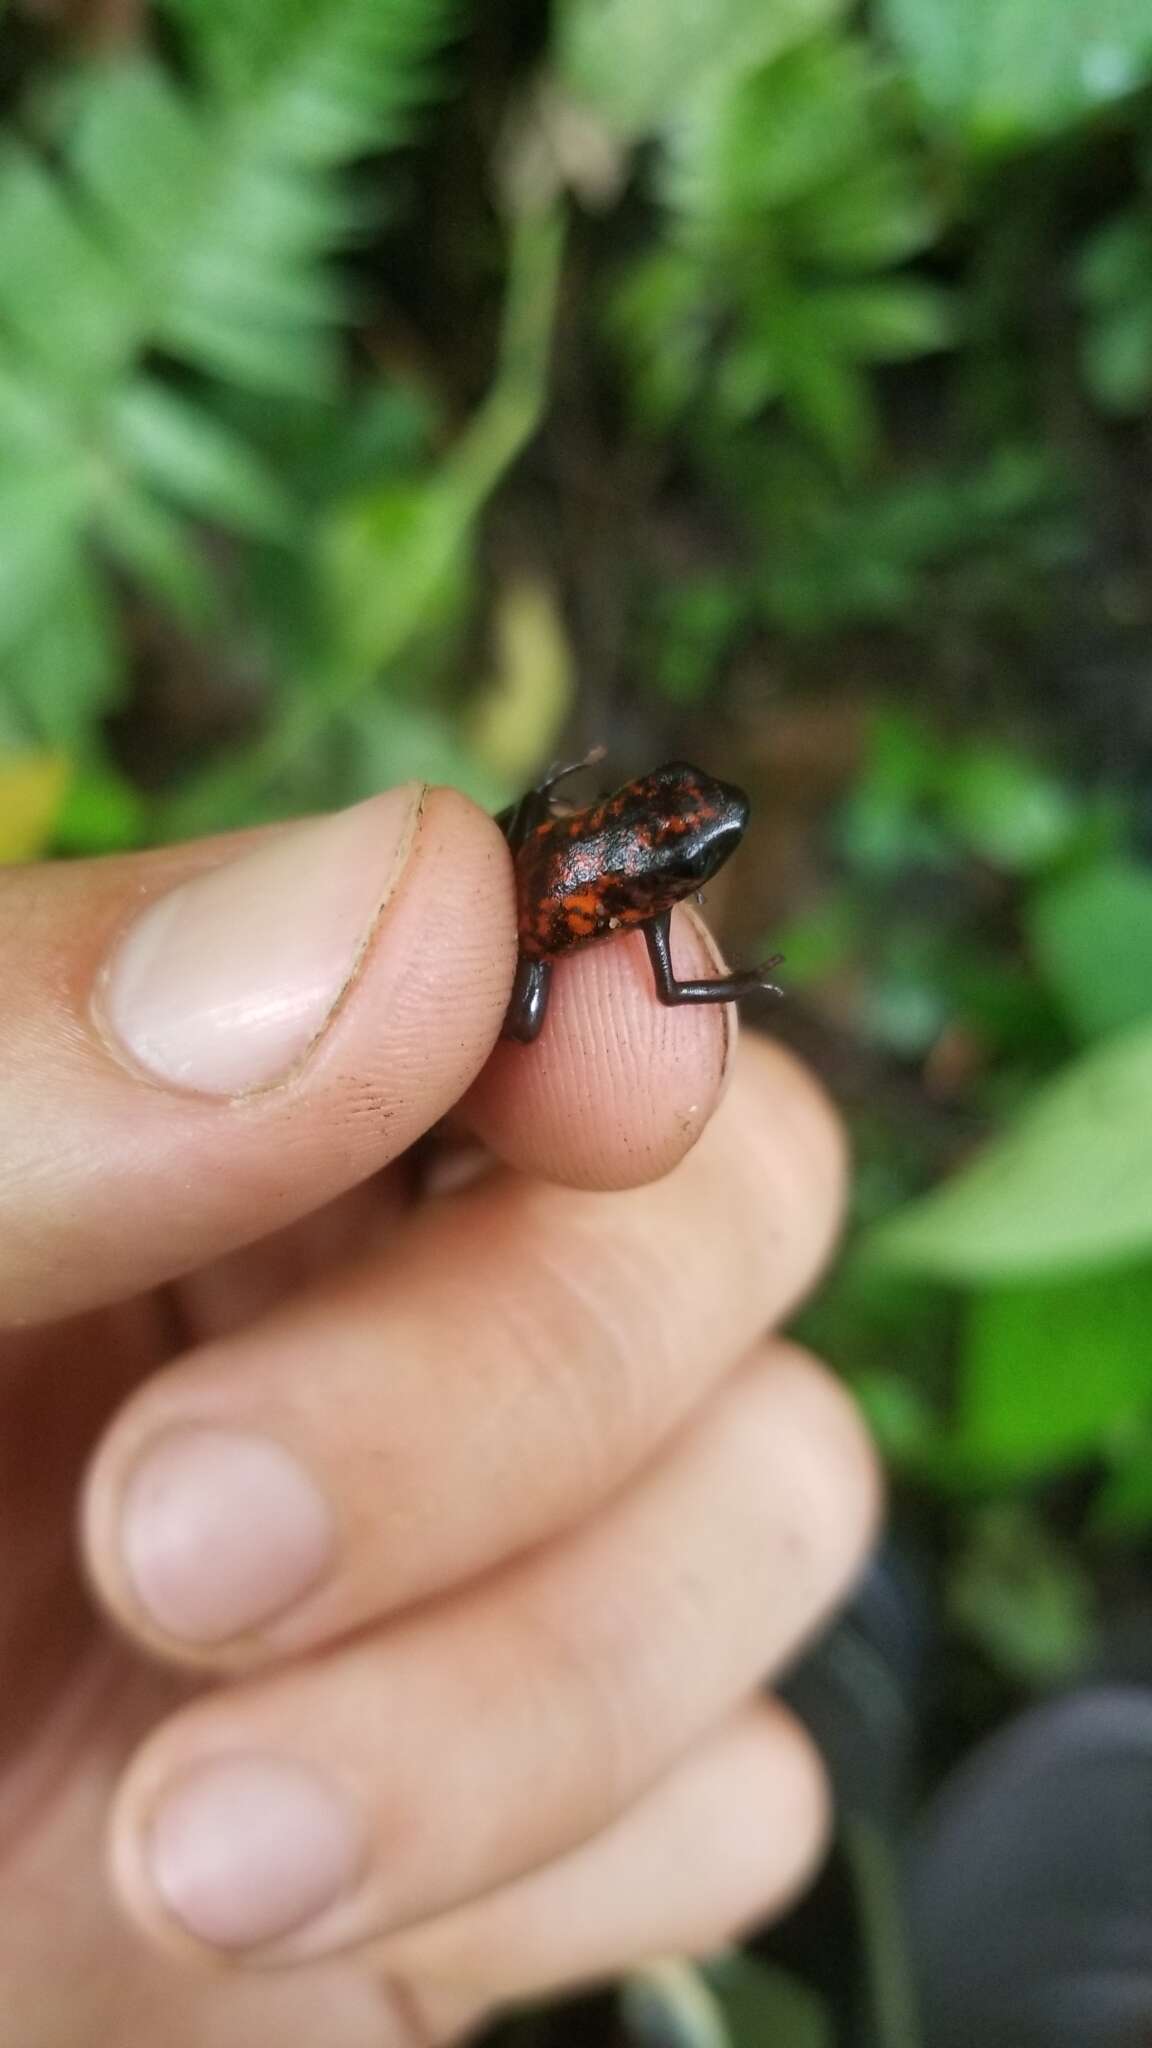 Image of Pichincha poison frog